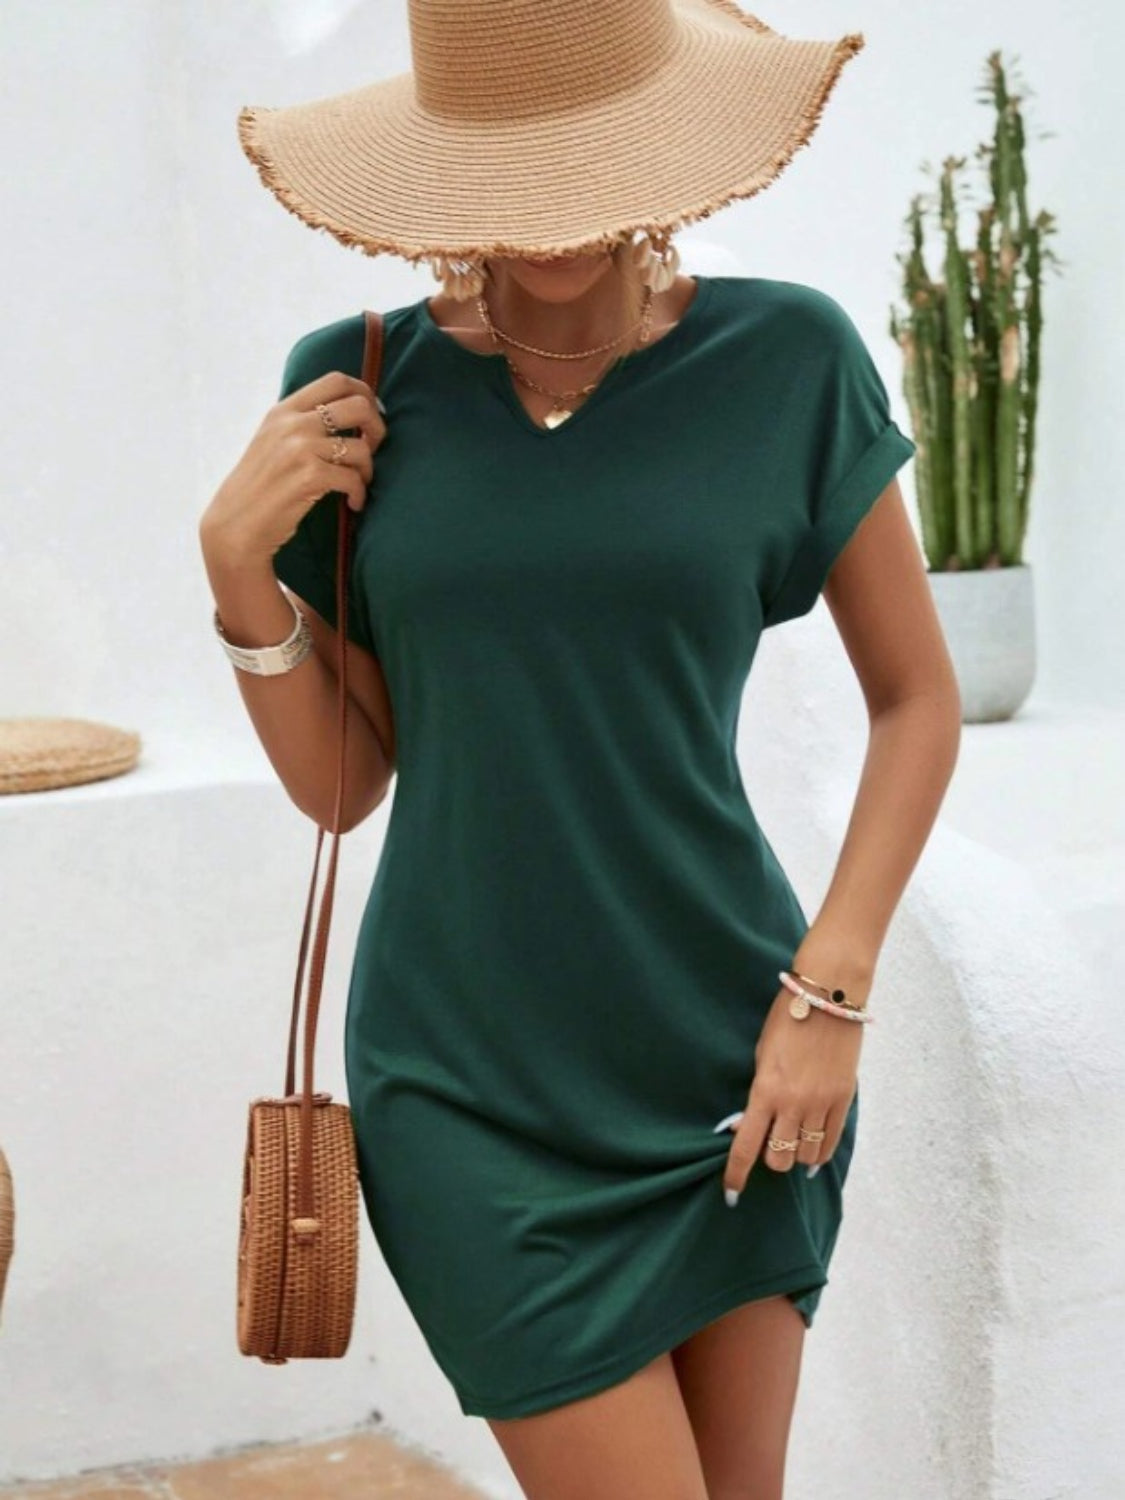 TEEK - Notched Short Sleeve Mini Tee Dress DRESS TEEK Trend Dark Green S 